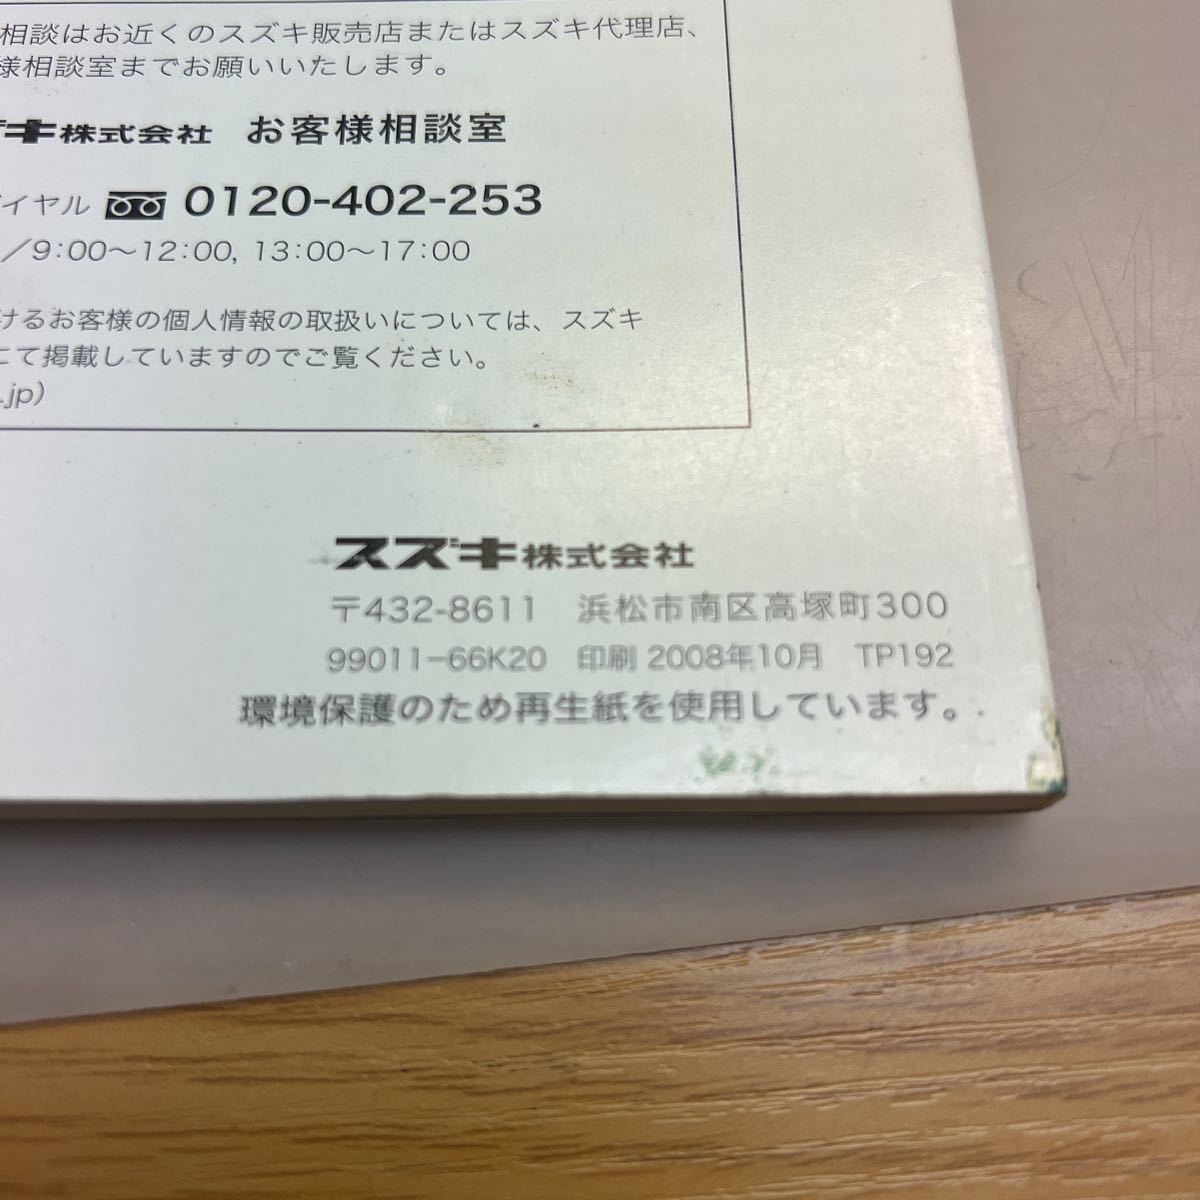 499円売切★スズキ セルボ 取扱説明書 SUZUKI HG21S 2008.10 印刷版★99011-66K20の画像2